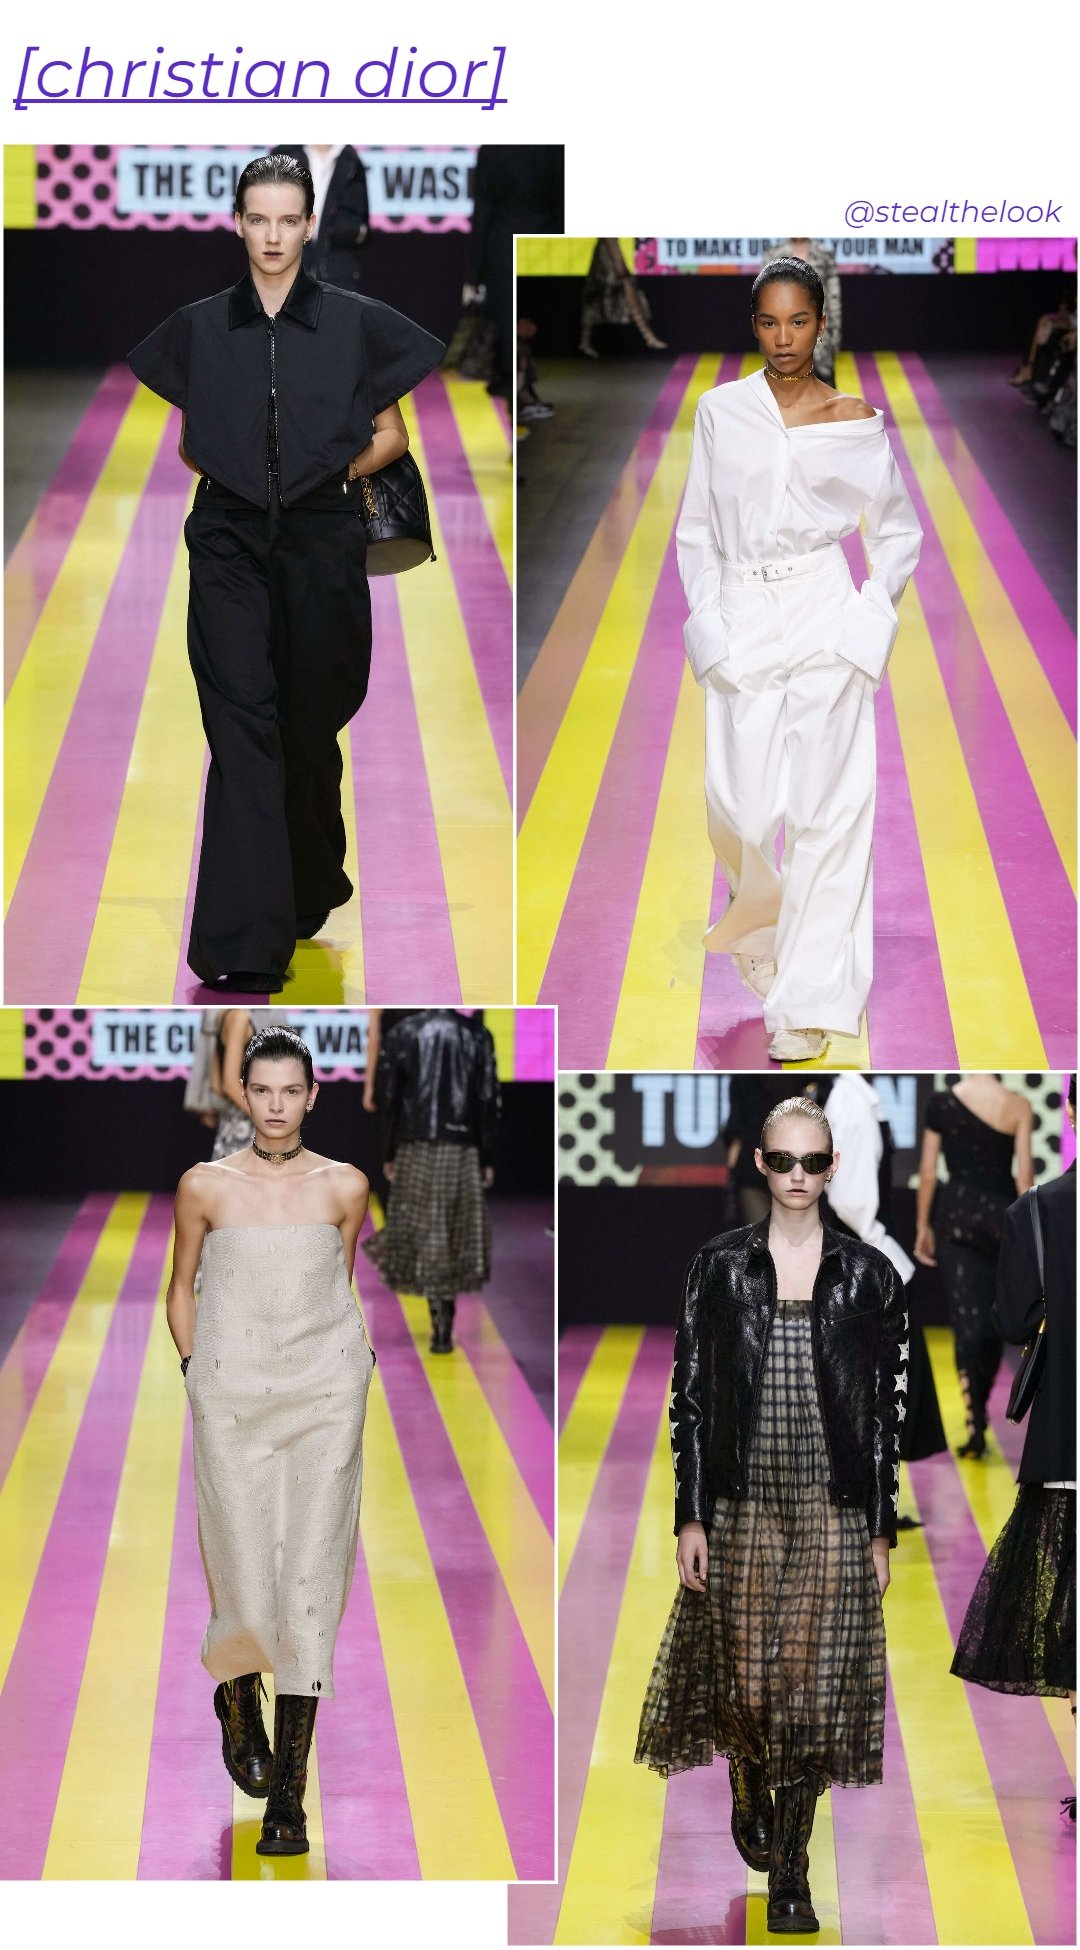 Christian Dior - roupas diversas - Paris Fashion Week - verão - colagem de imagens - https://stealthelook.com.br